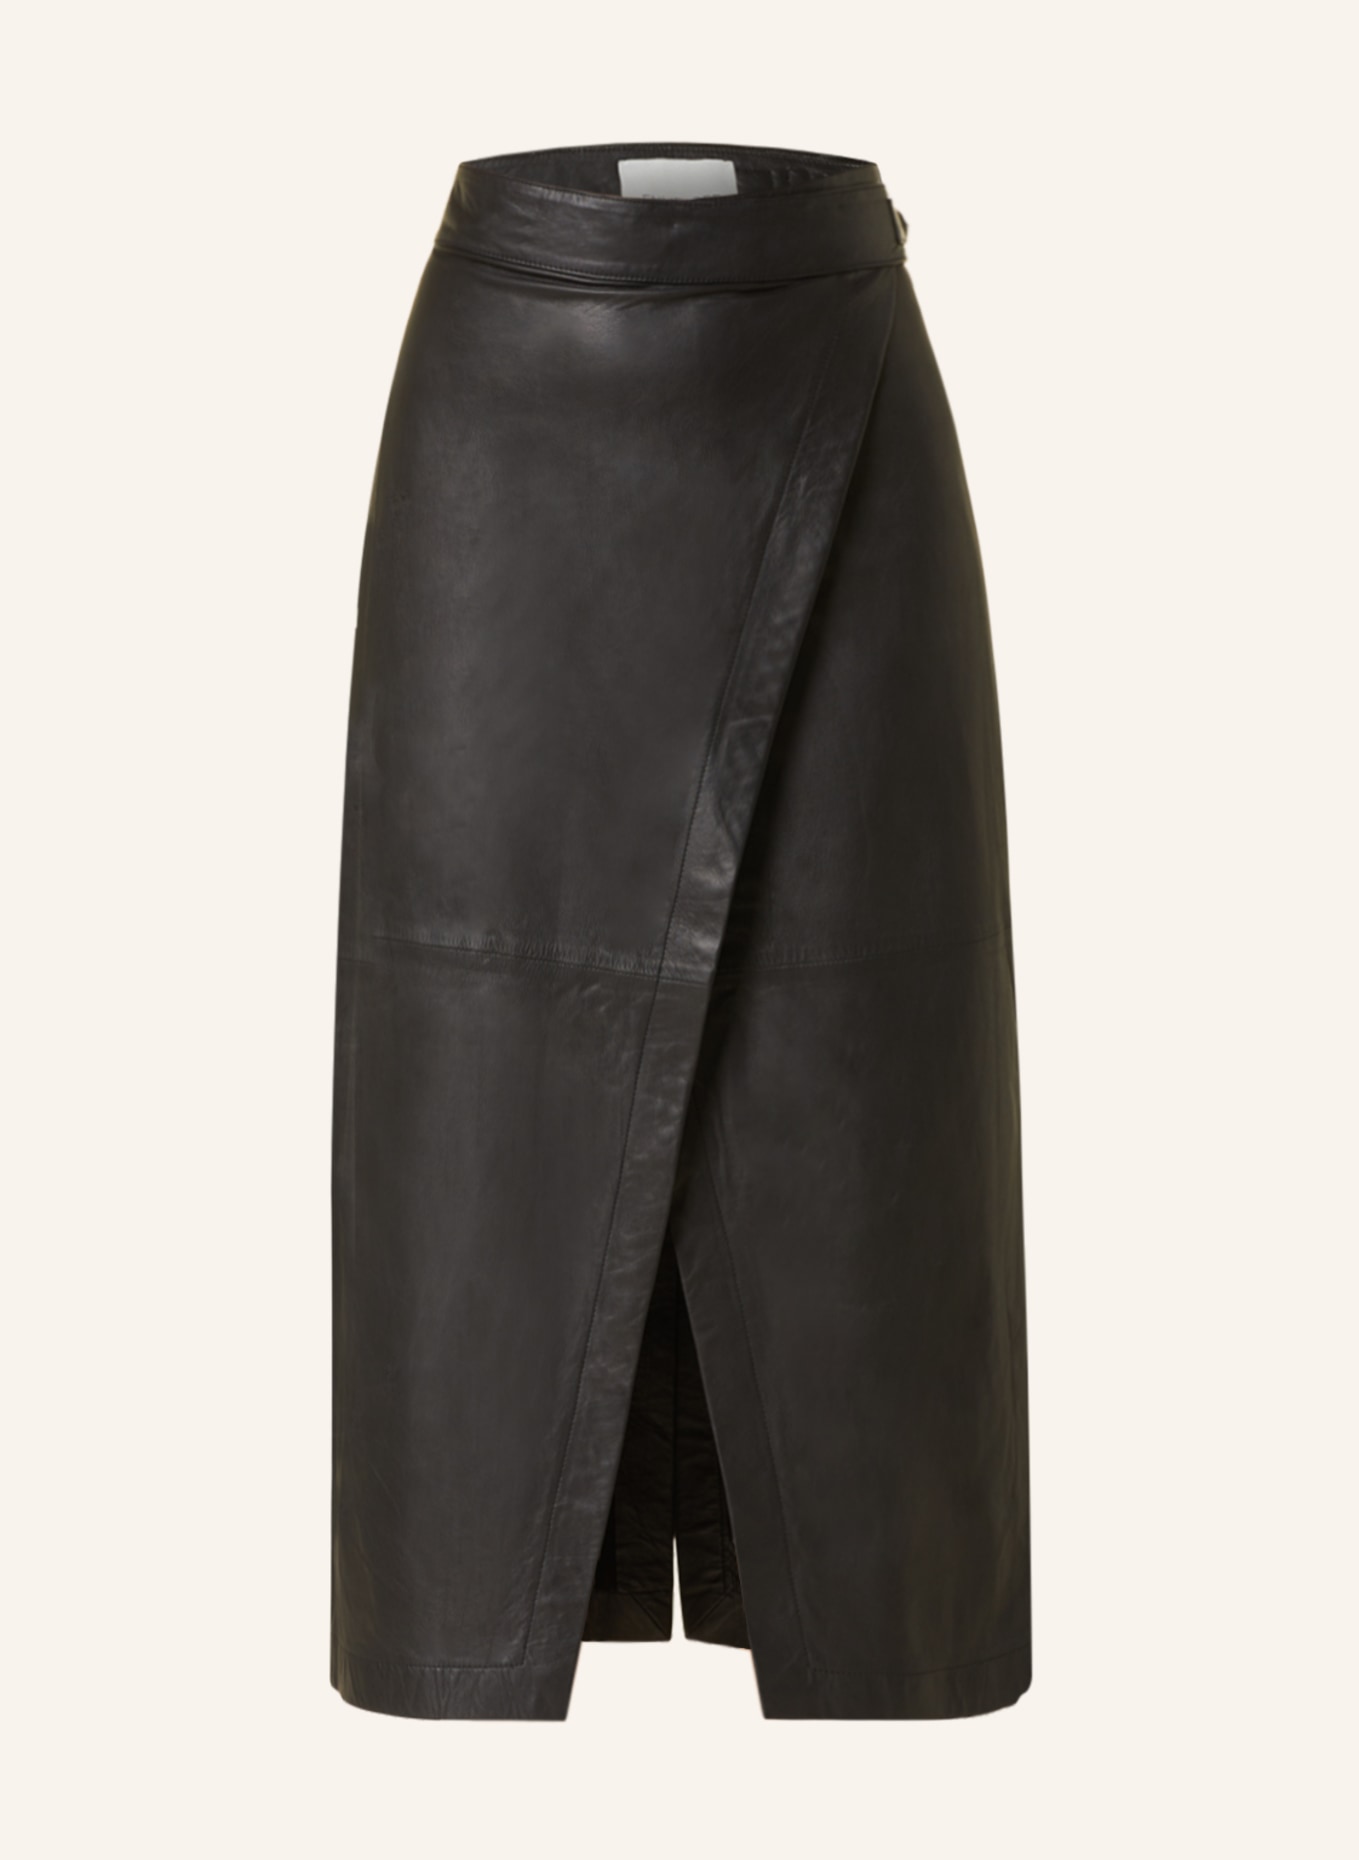 ENVELOPE 1976 Wrap skirt BOLT made of leather, Color: BLACK (Image 1)